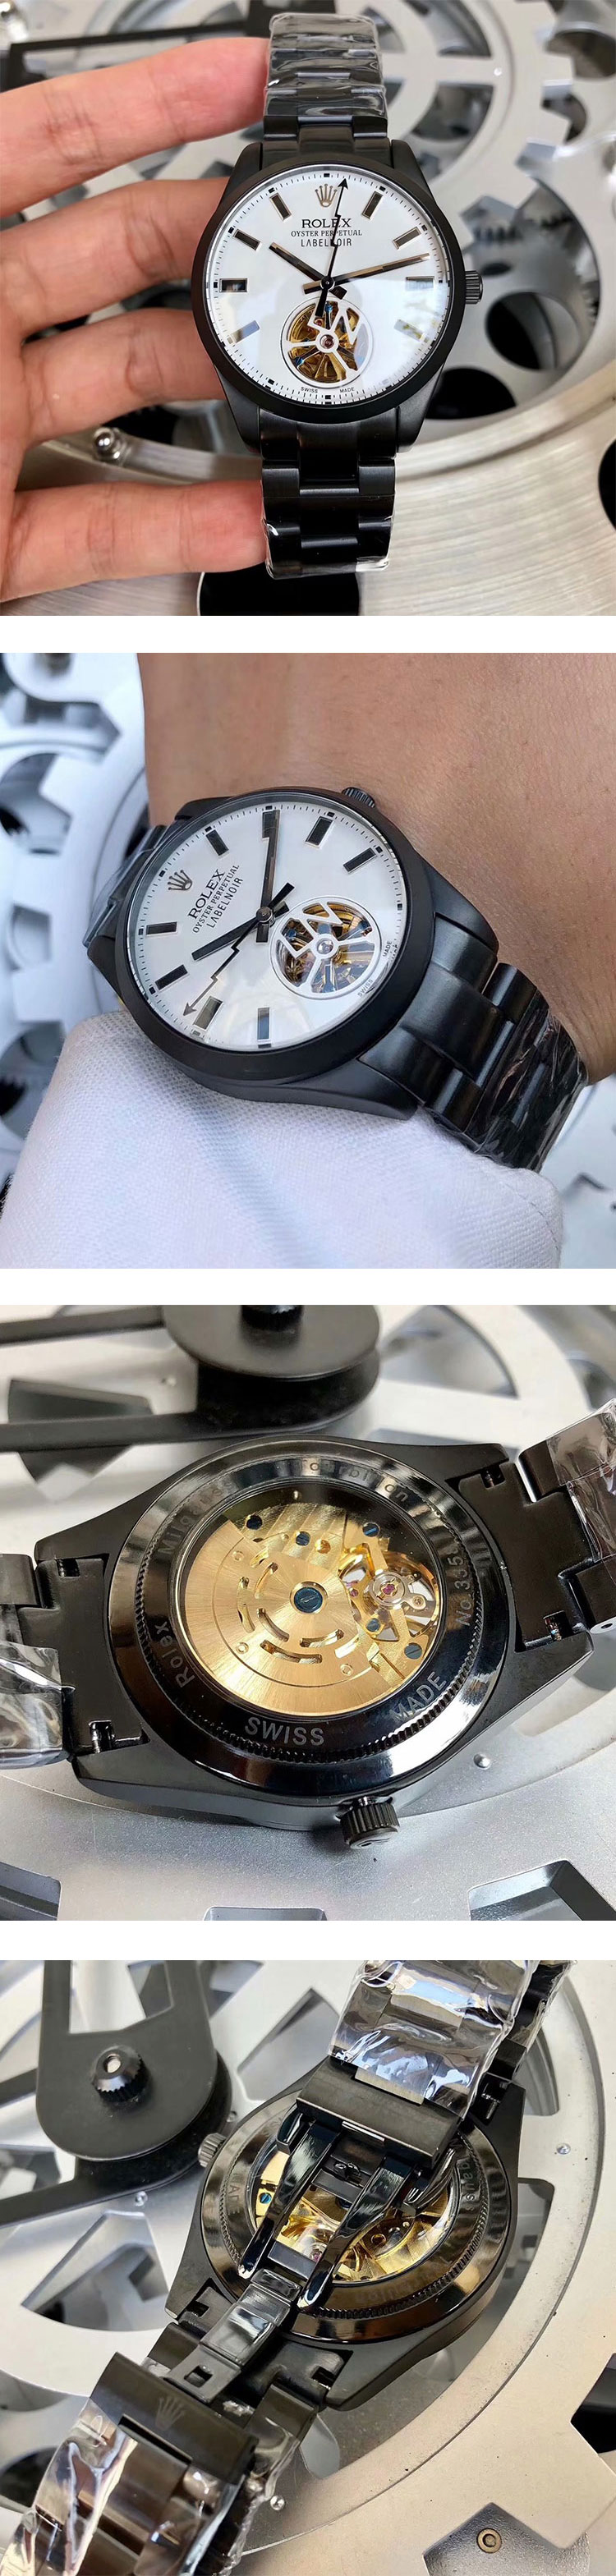 カスタムロレックスコピー時計 116400 トゥールビヨン ミルガウス 40mm ホワイト